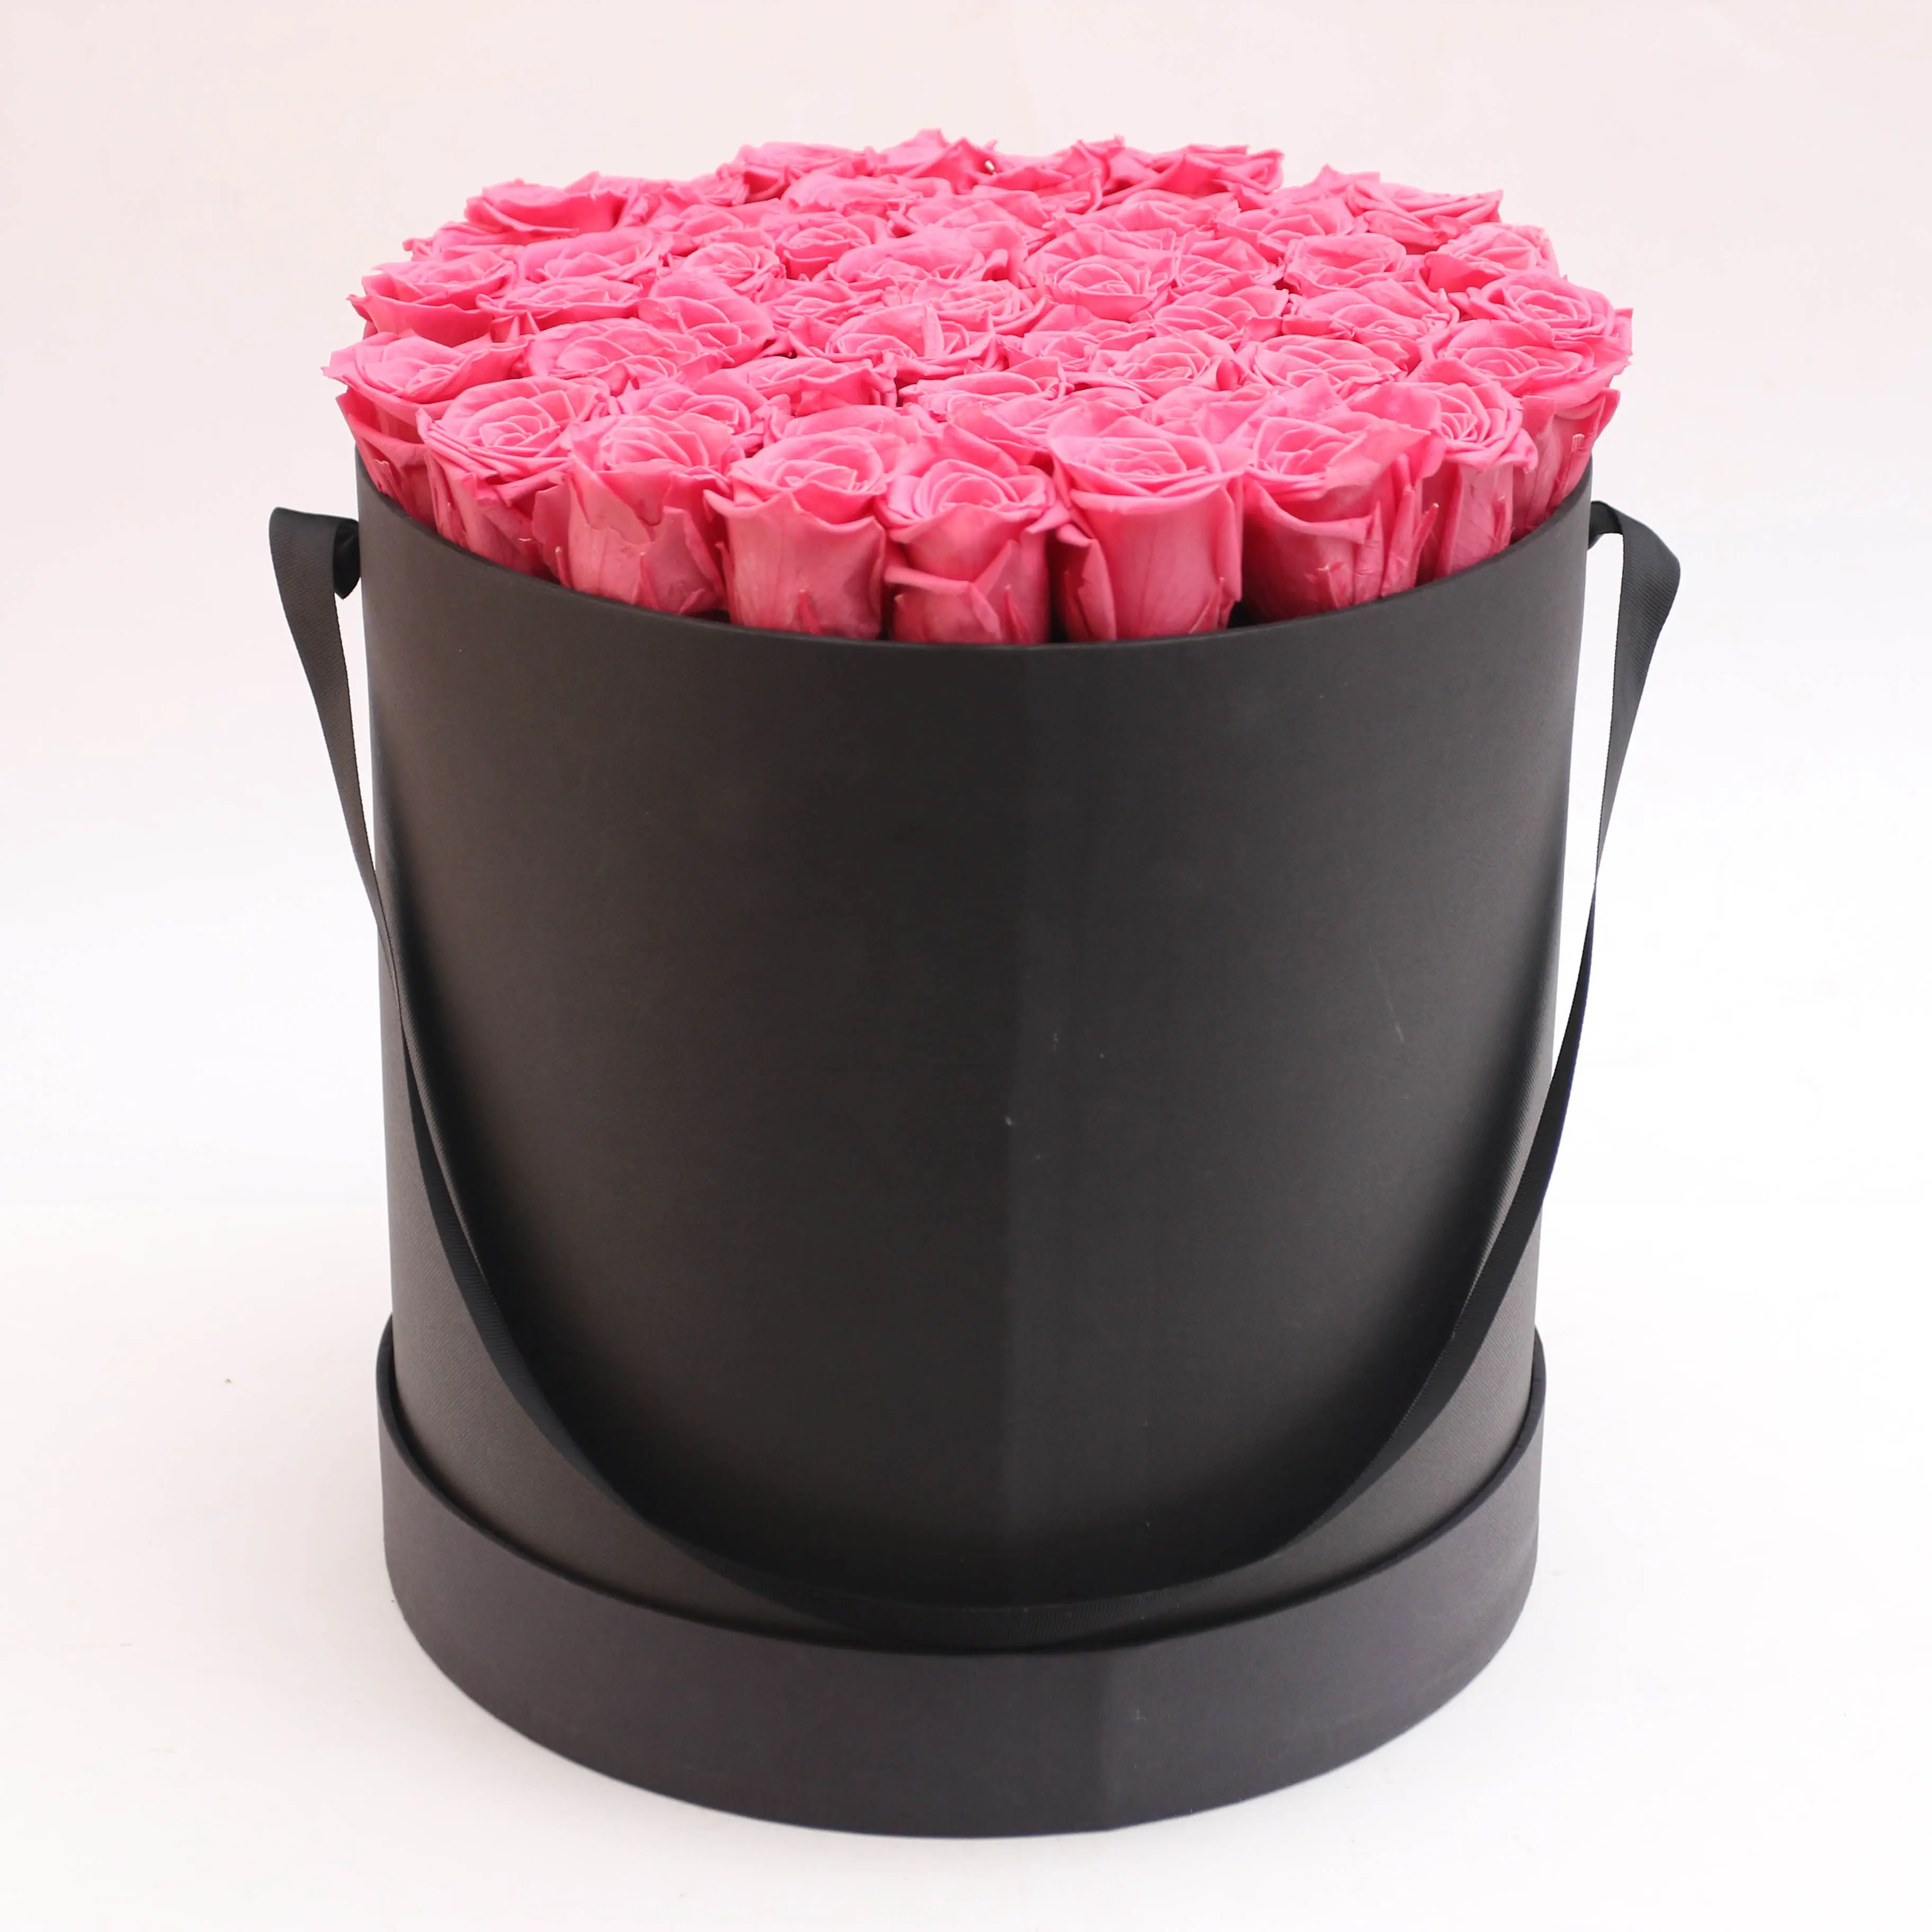 Cajas de rosas de flores eternas de lujo La Rosa eterna más Popular en caja de regalo de rosas preservadas para la familia de amigos